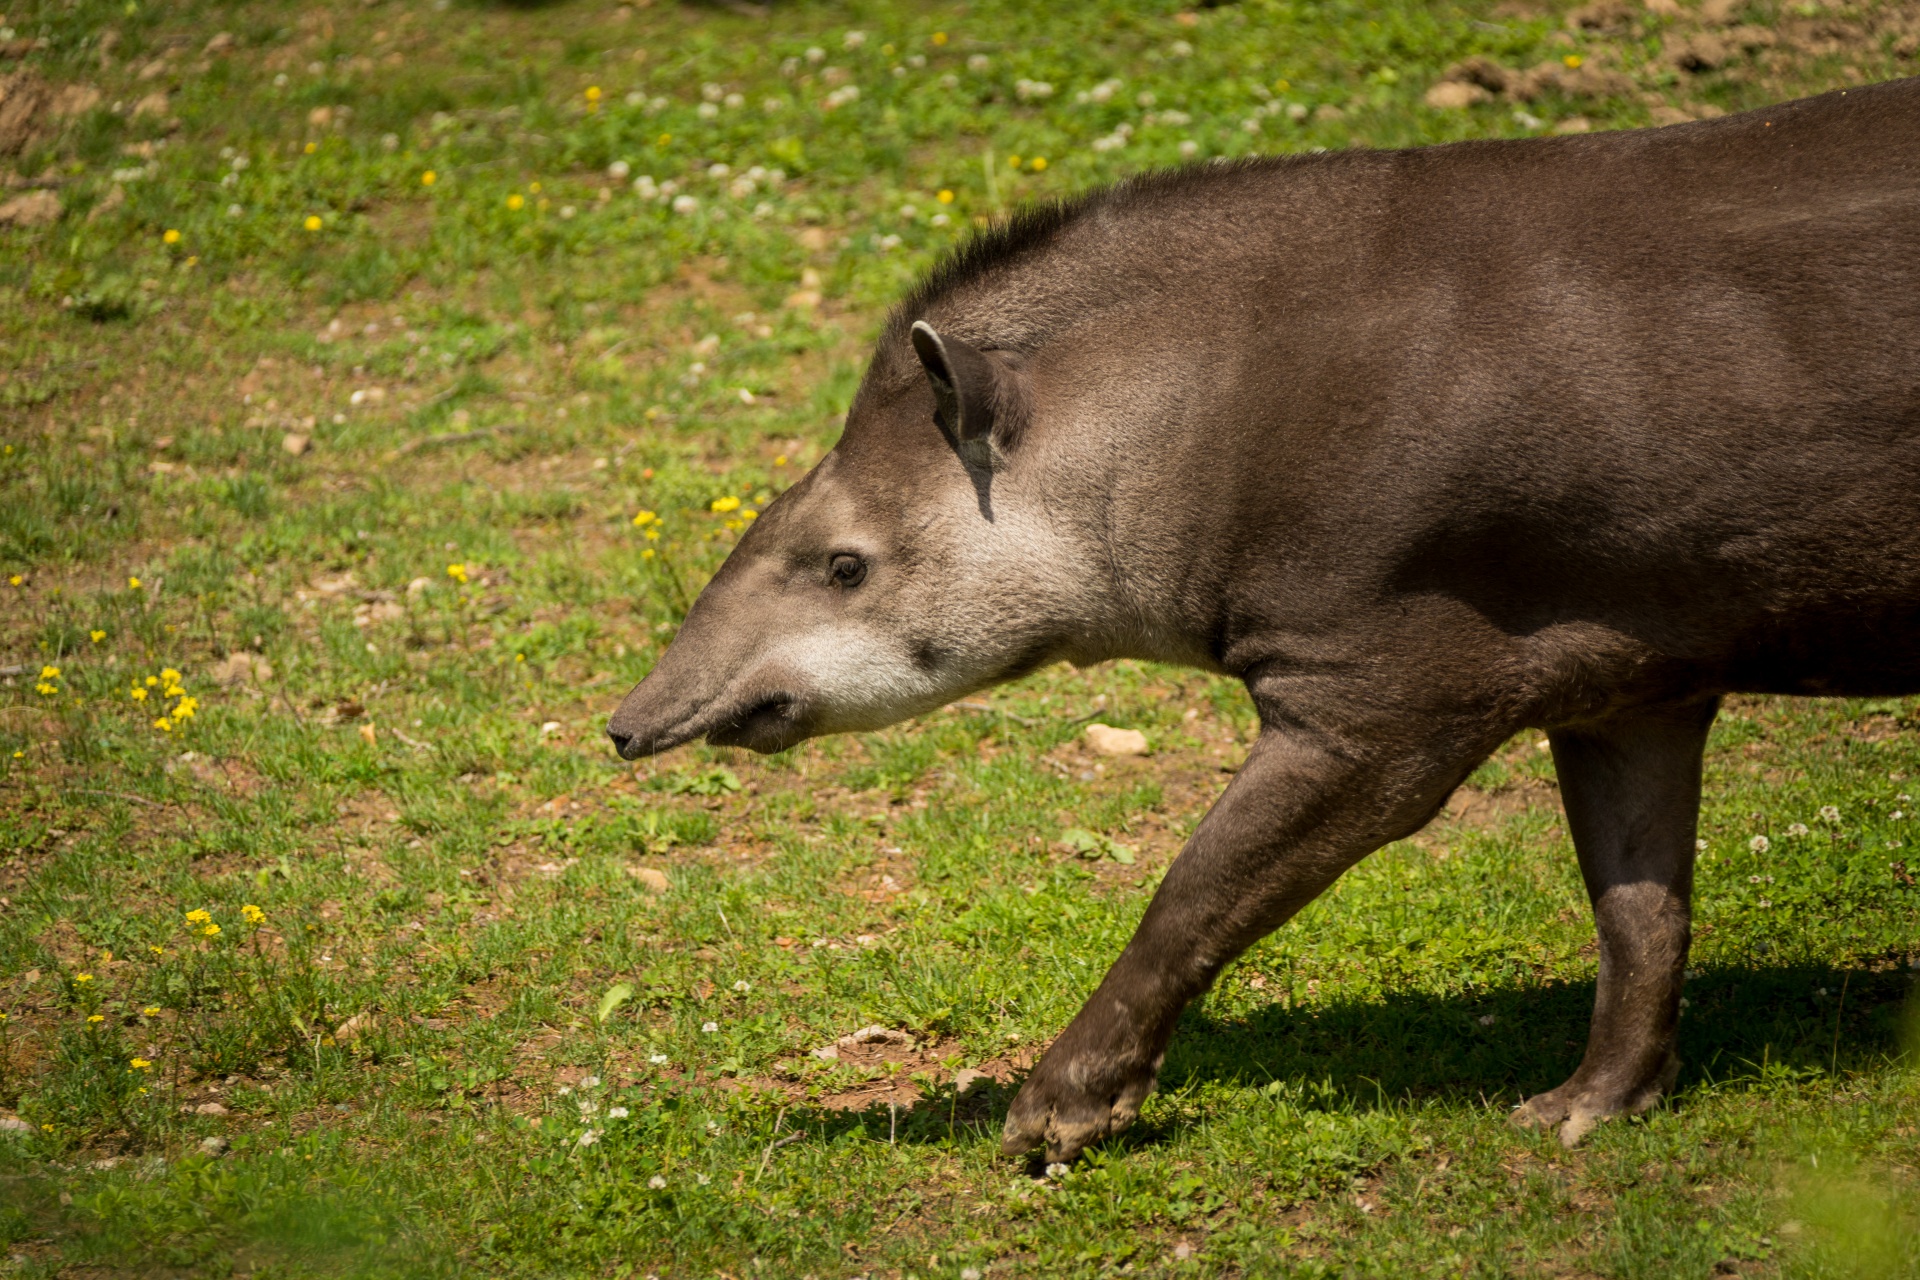 Tapir walking on green grass